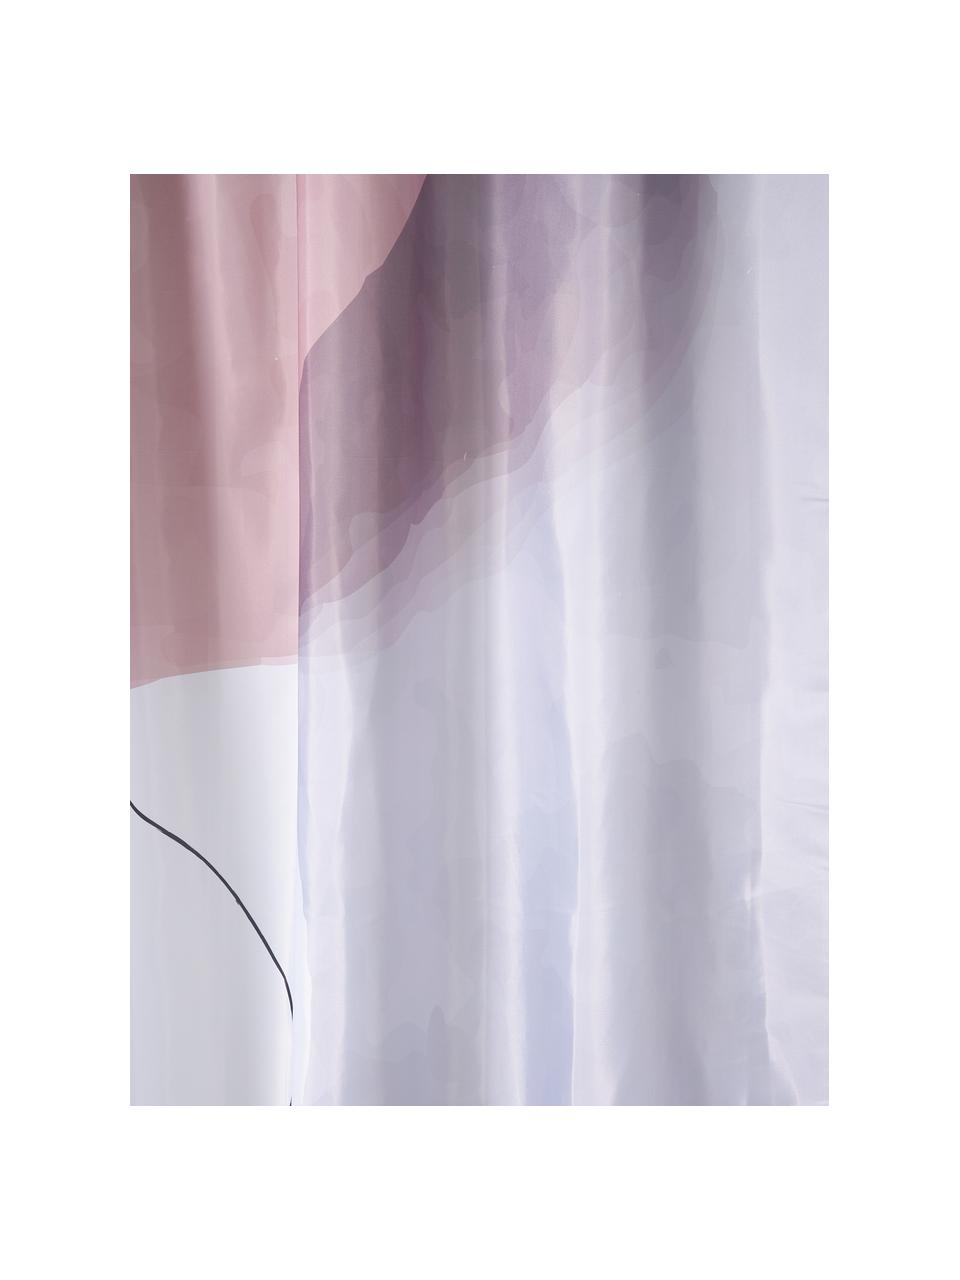 Douchegordijn Face met One Line tekening, 100% polyester, Roze, wit, grijs, zwart, B 180 x L 200 cm